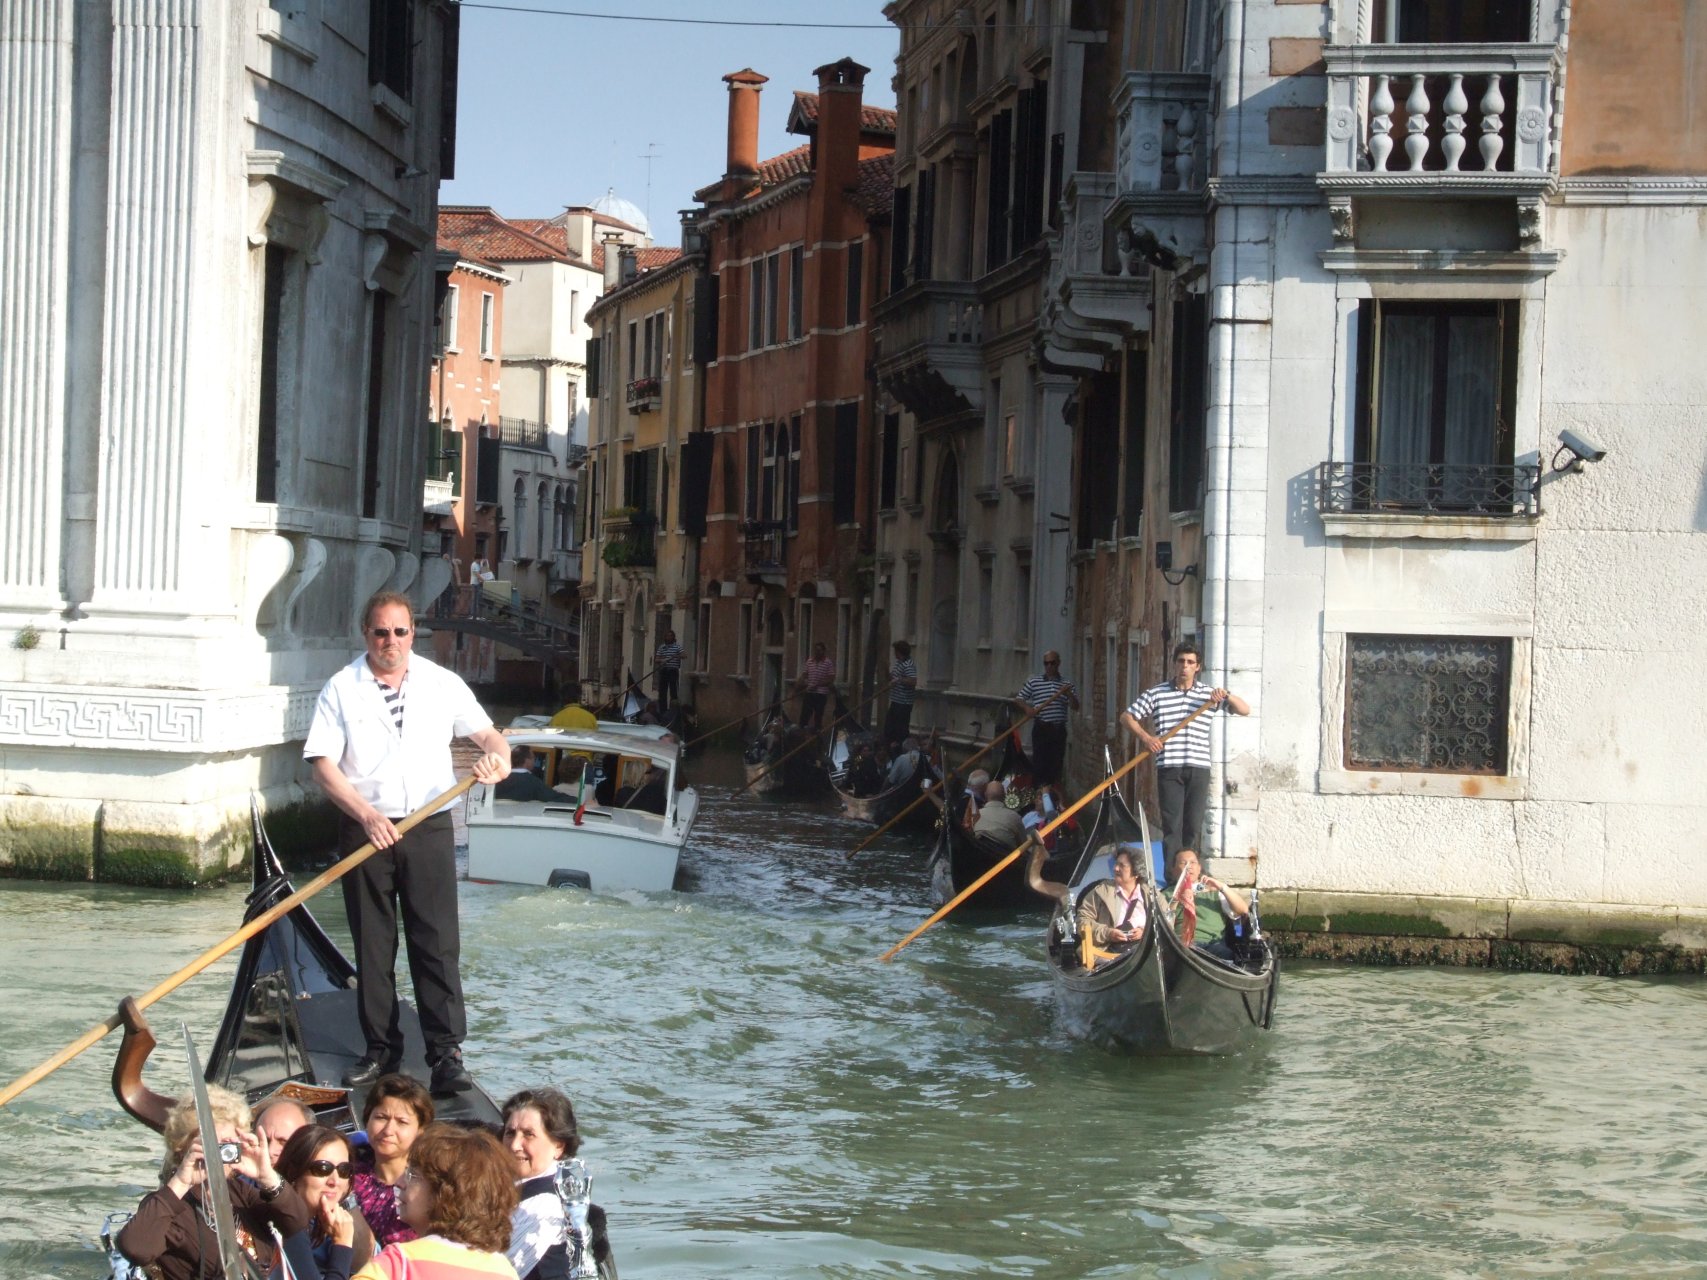 Gondola to przede wszystkim atrakcja dla turystów, droga atrakcja...